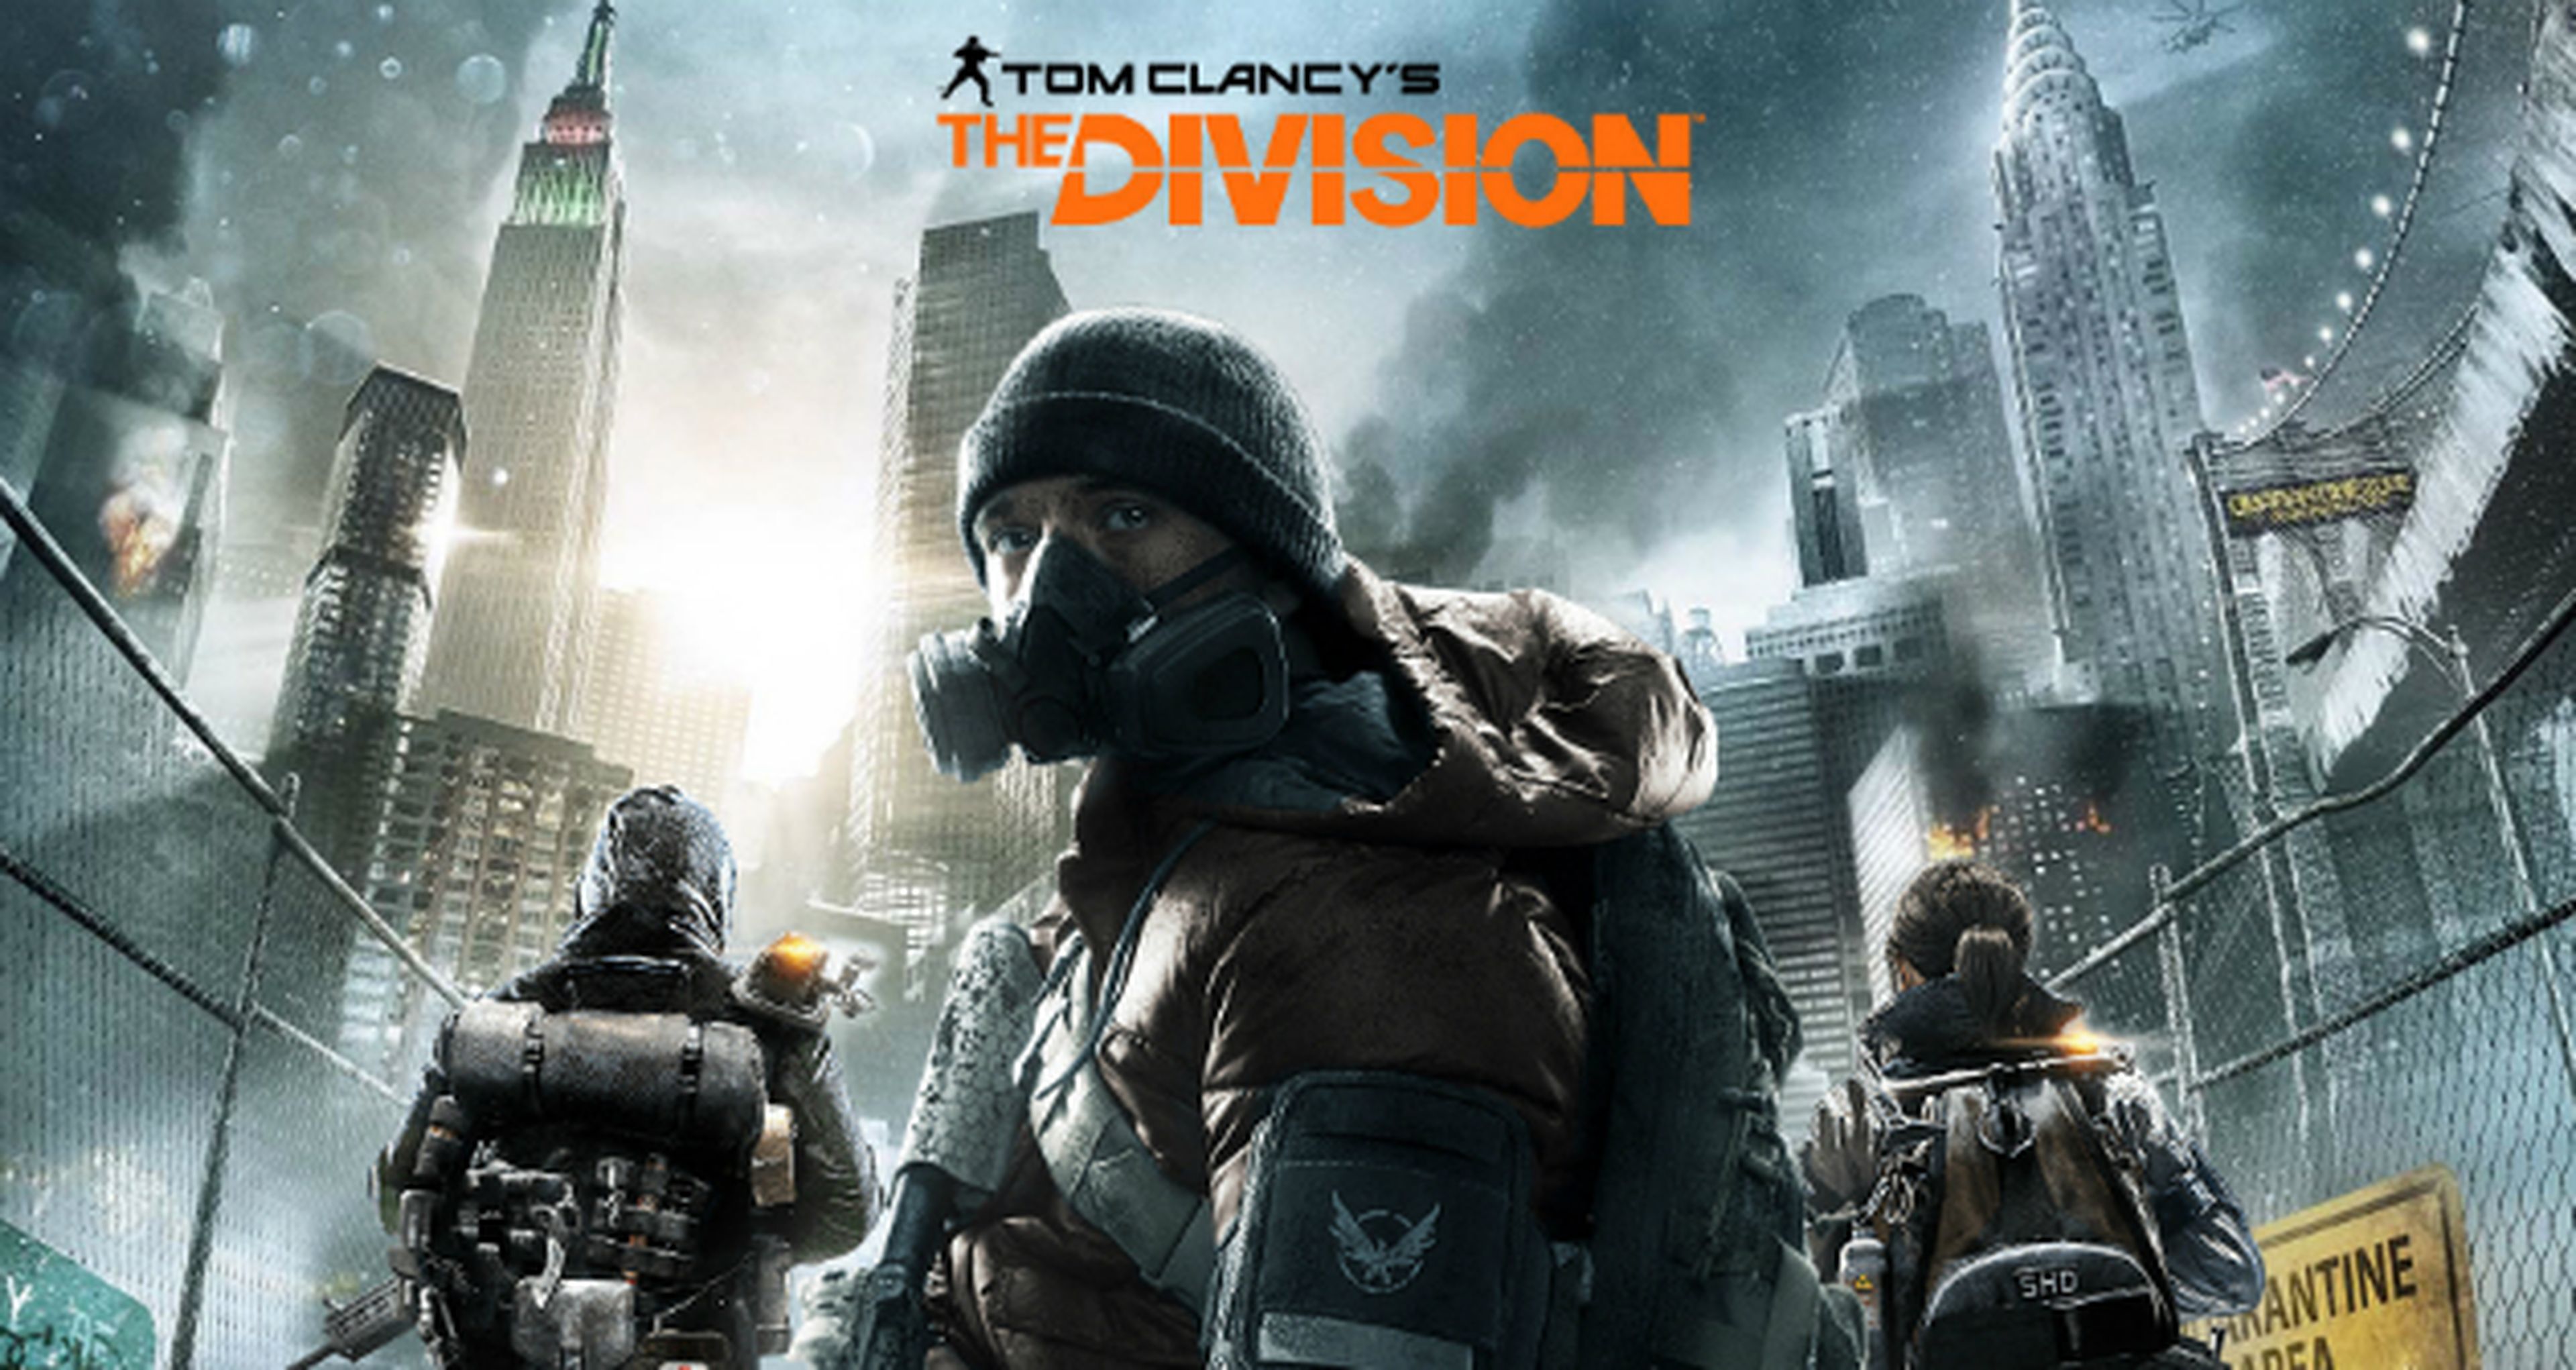 The Division - Códigos gratis para skins en PS4, Xbox One y PC